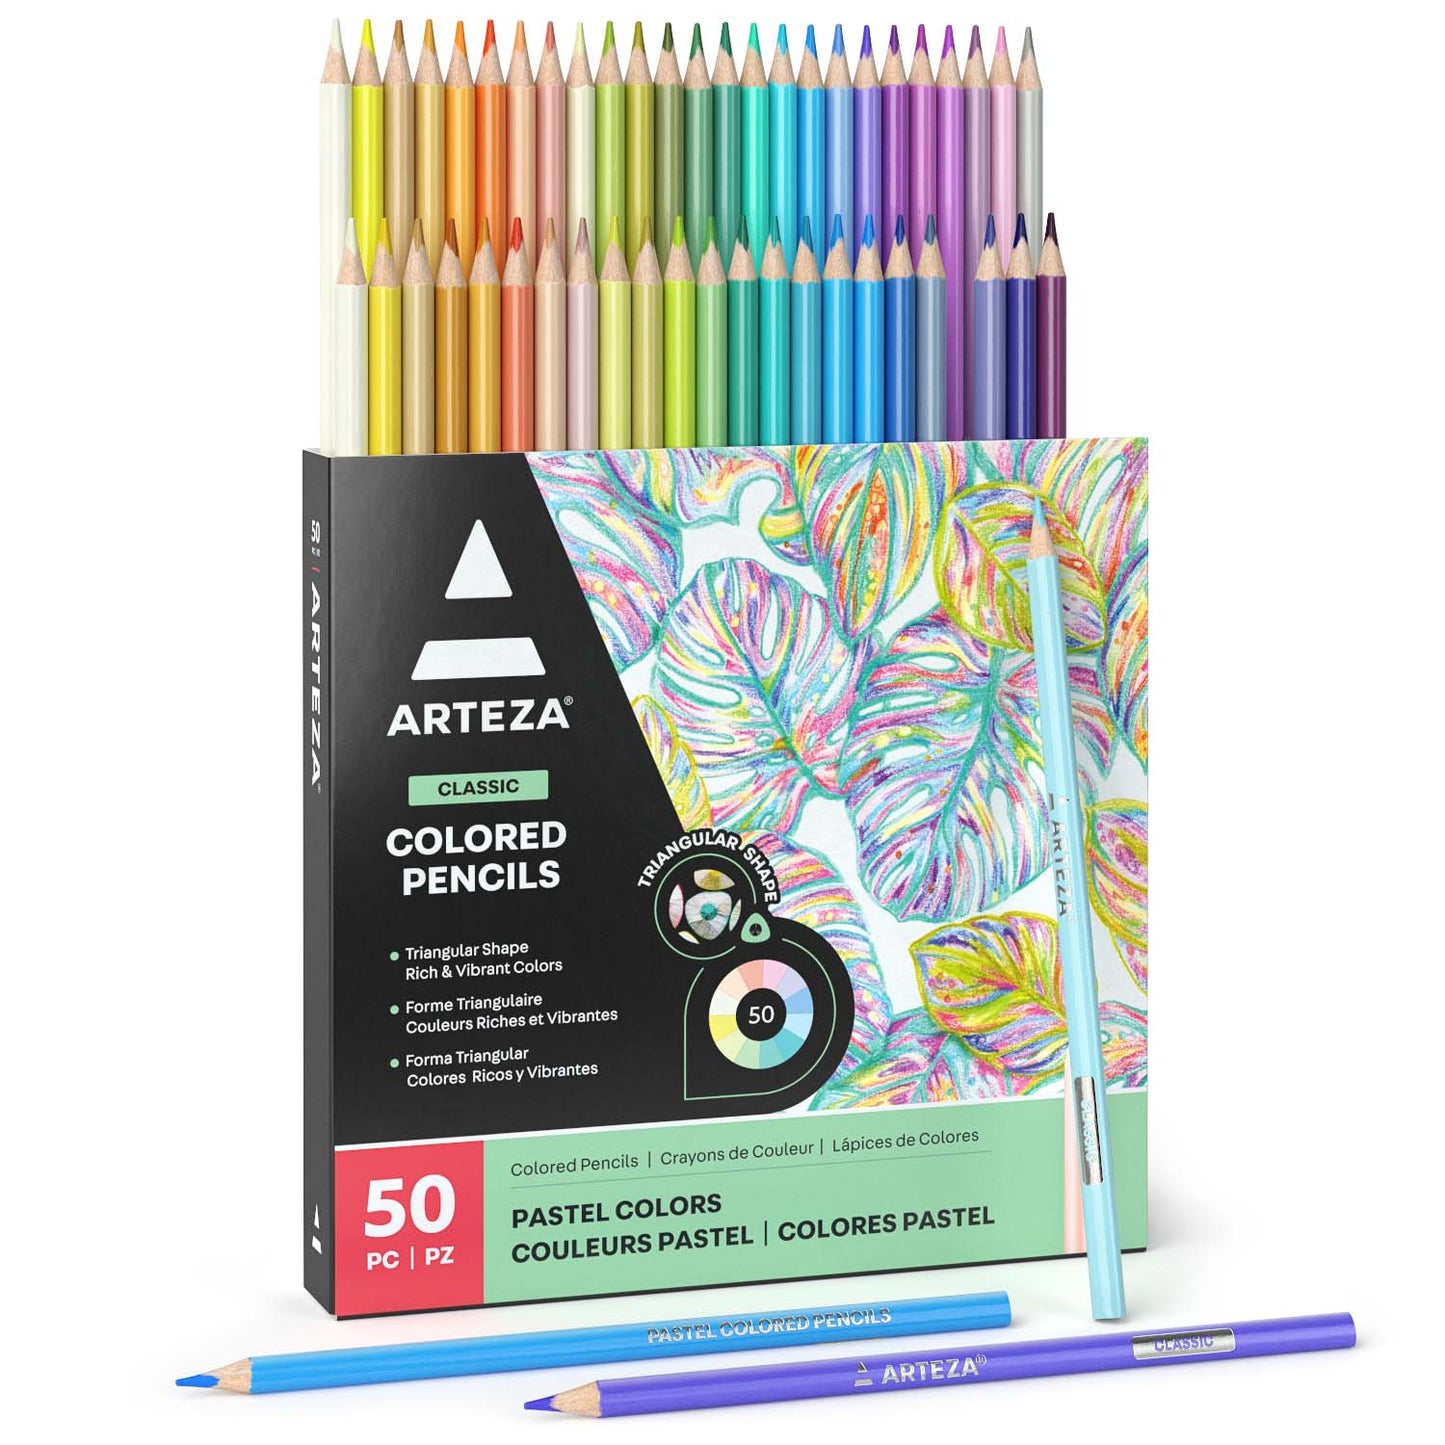 https://arteza.com/cdn/shop/products/pastel-colored-pencils-set-of-50_E57M9jOV.jpg?v=1652895423&width=1445